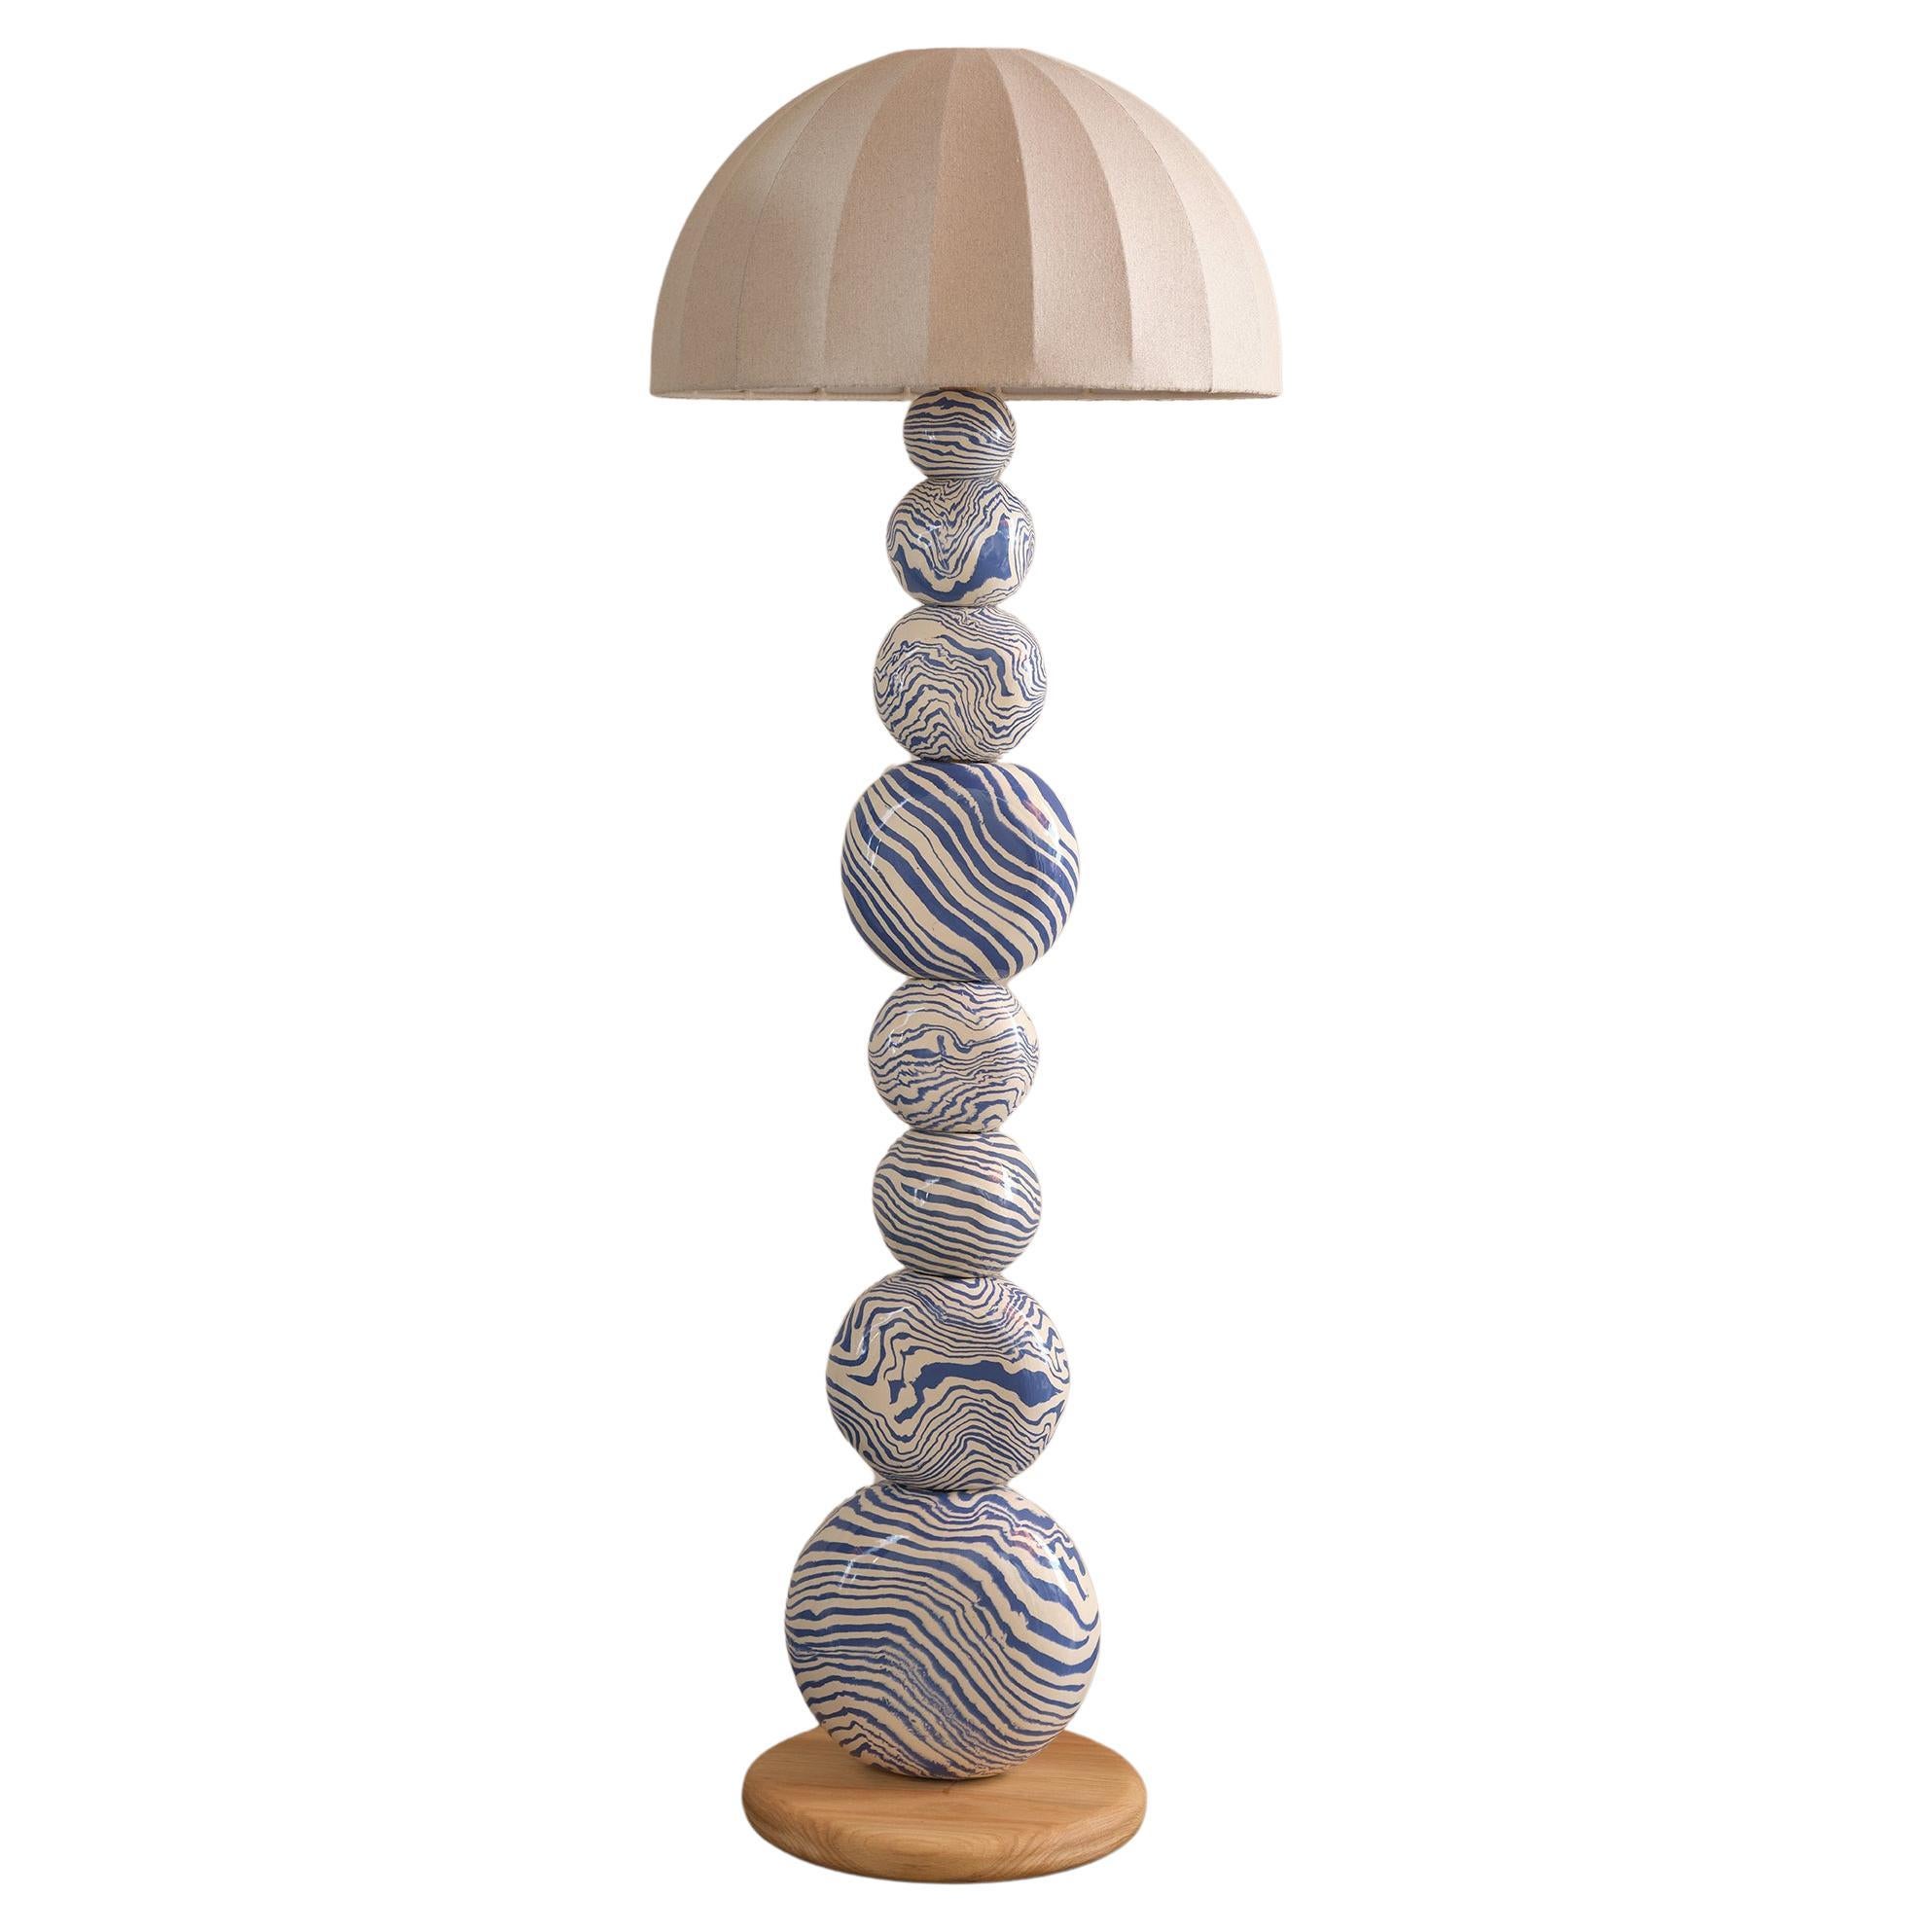 Henry Holland Studio Handmade Blue and White Ceramic Sphere Floor Lamp